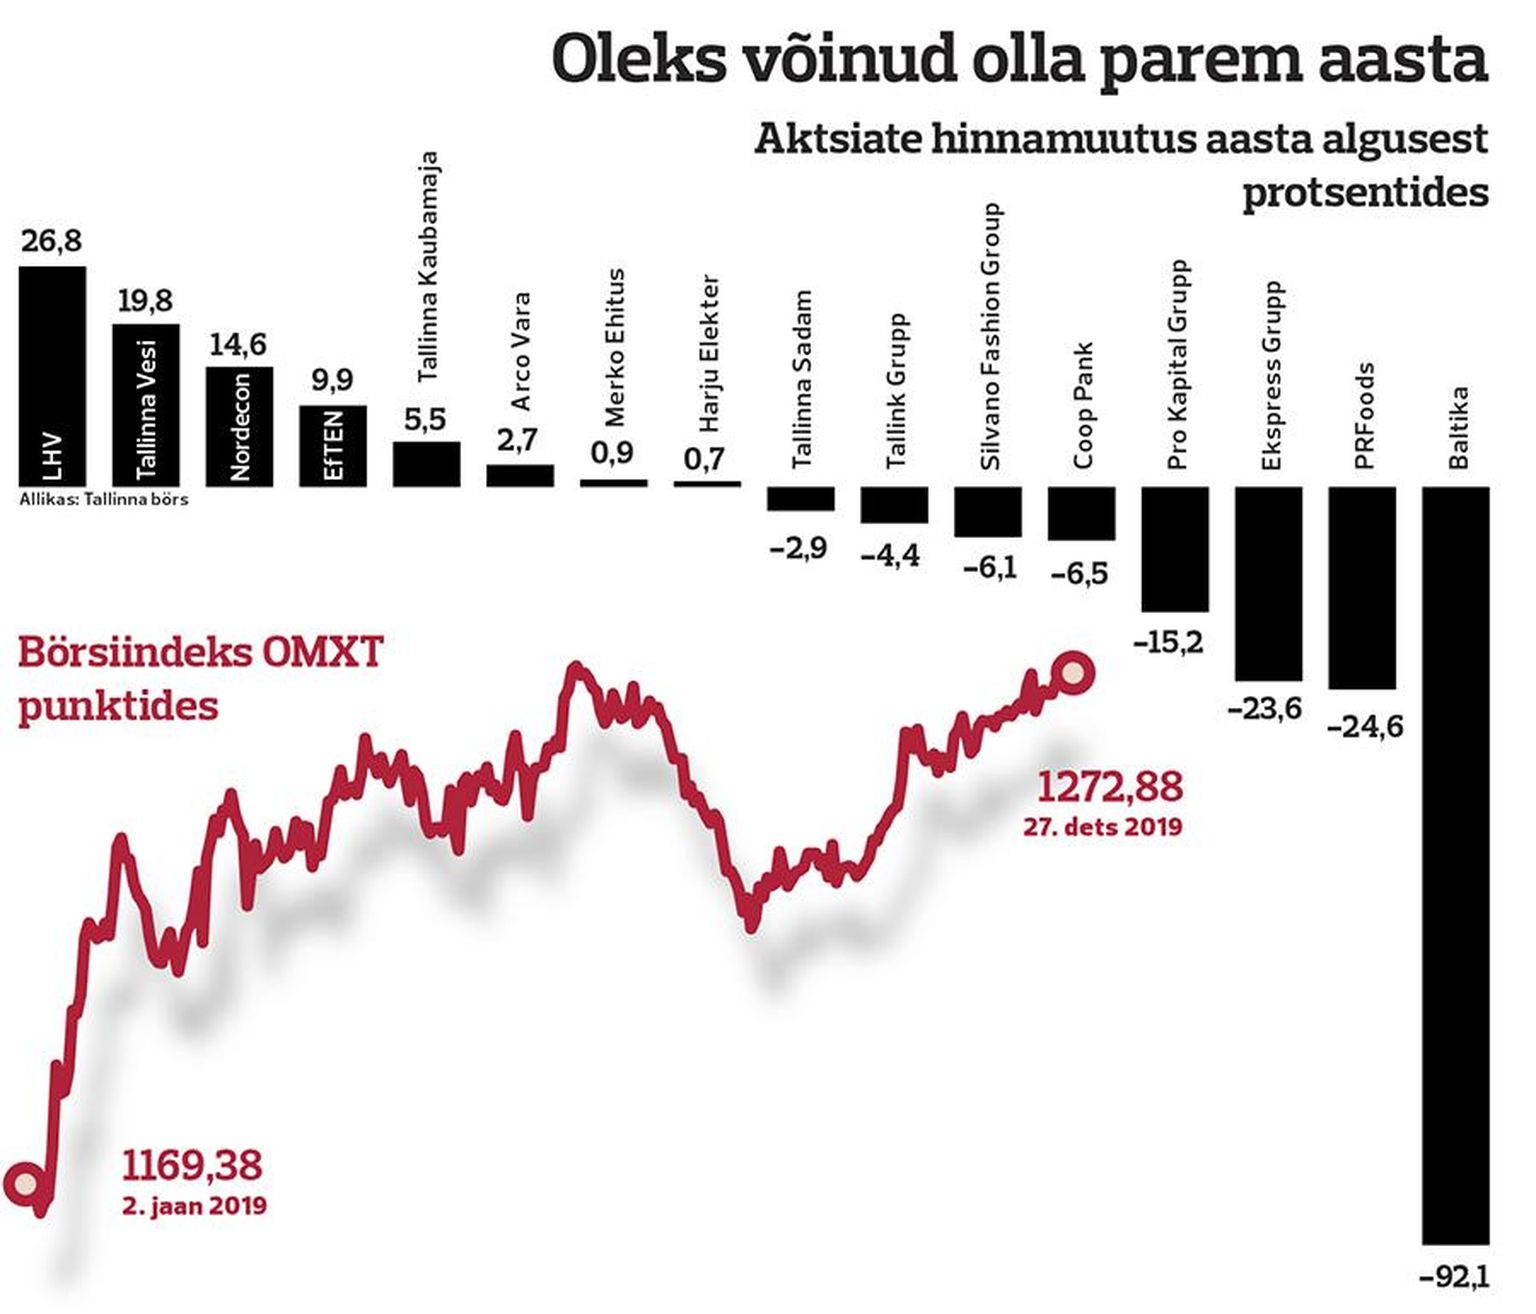 Aktsiate hinnamuutus aasta algusest. 
Graafikus on ebatäpsus. Tegelikult on Baltika aktsia langus 67%.